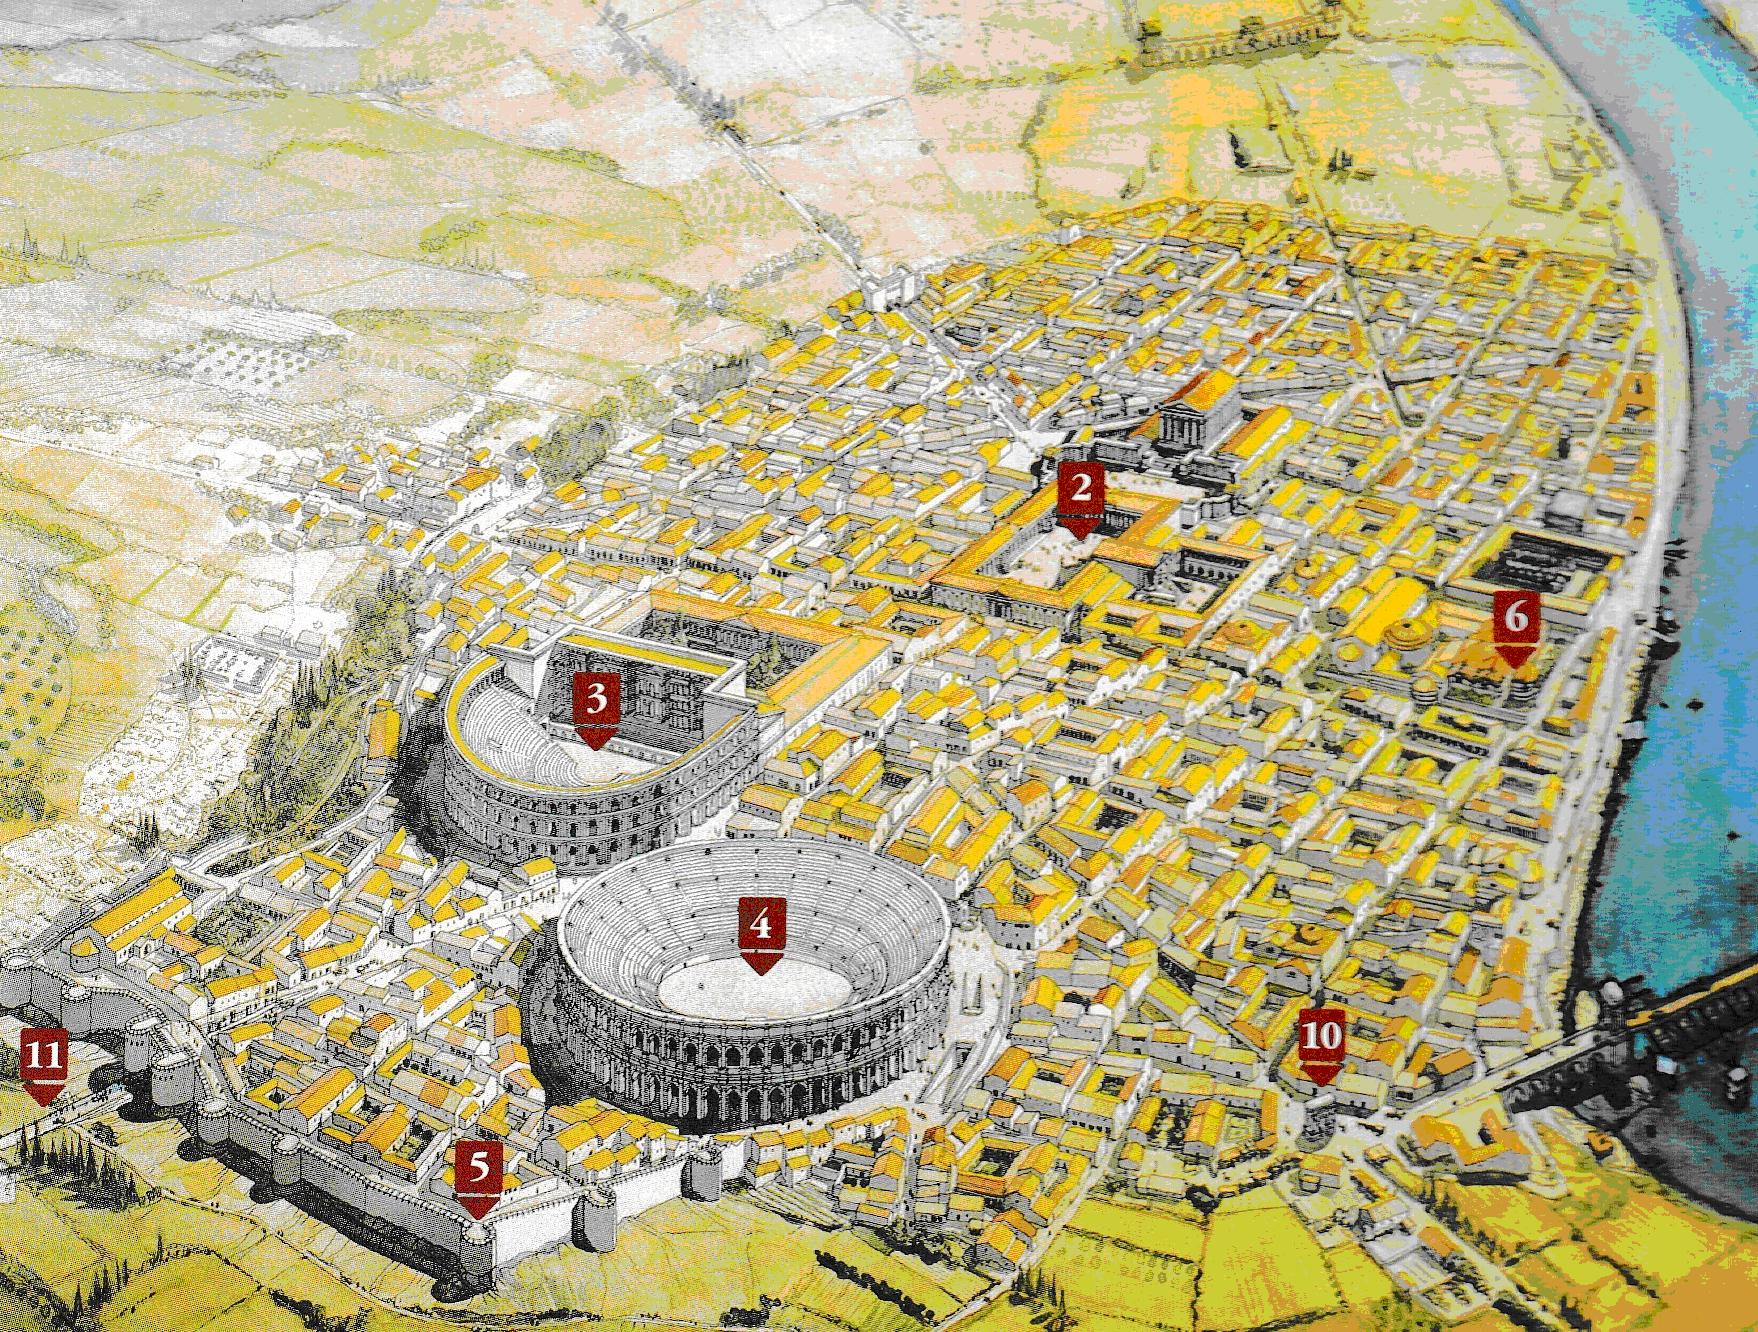 Lactancio y su plan completo. Una ciudad romana (Lugdumun) que no debía desaparecer.